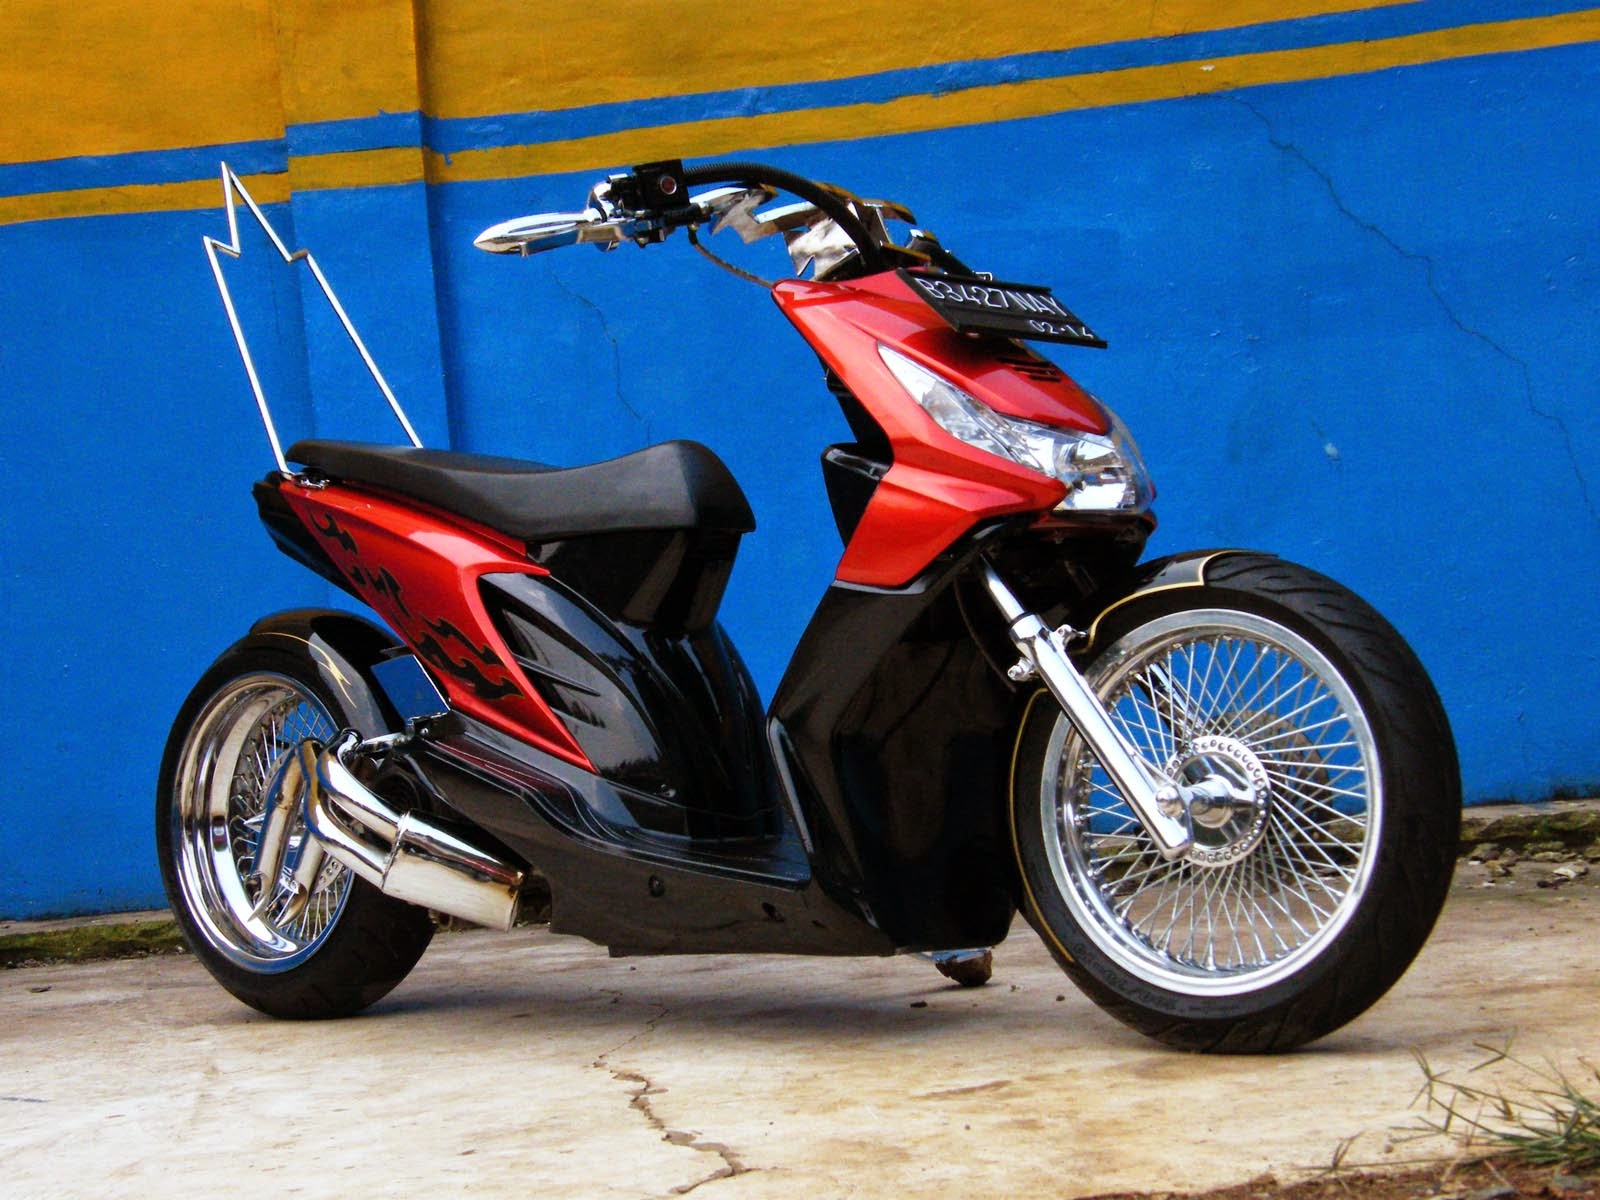 Foto Modifikasi Honda Beat Sporty Keren Terbaru Modifikasi Motor